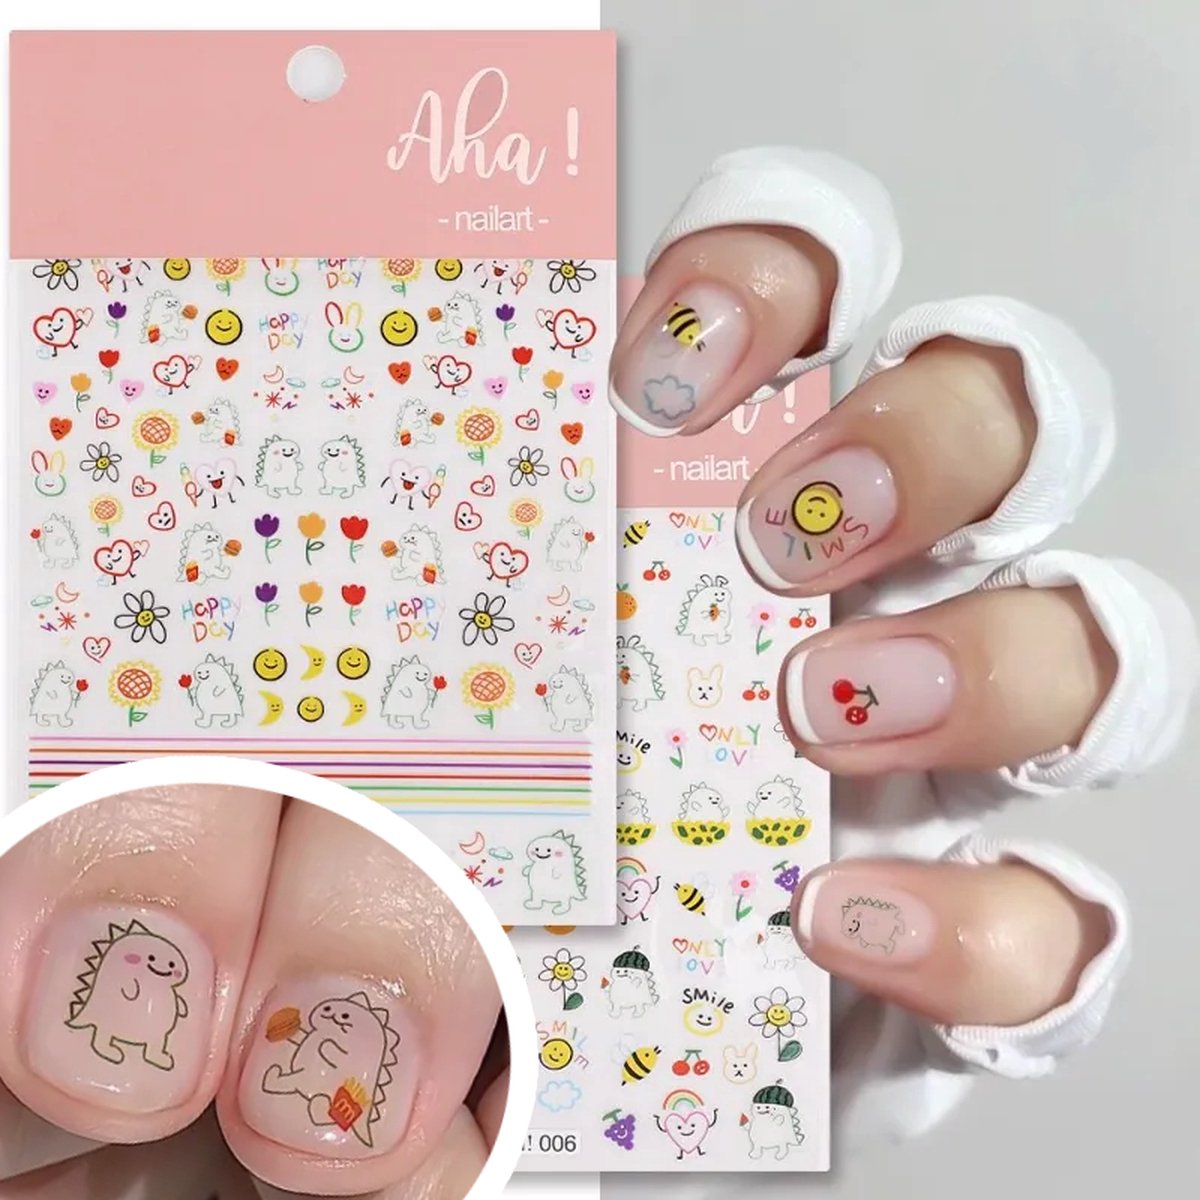 Aha, 2 vellen Nagel stickers - Nagelstickers Dinosaur, hart, smiley , bloemen - nagel decoratie - zelfklevende nagelstickers - Cute kawaii stickers - Nail art set tools